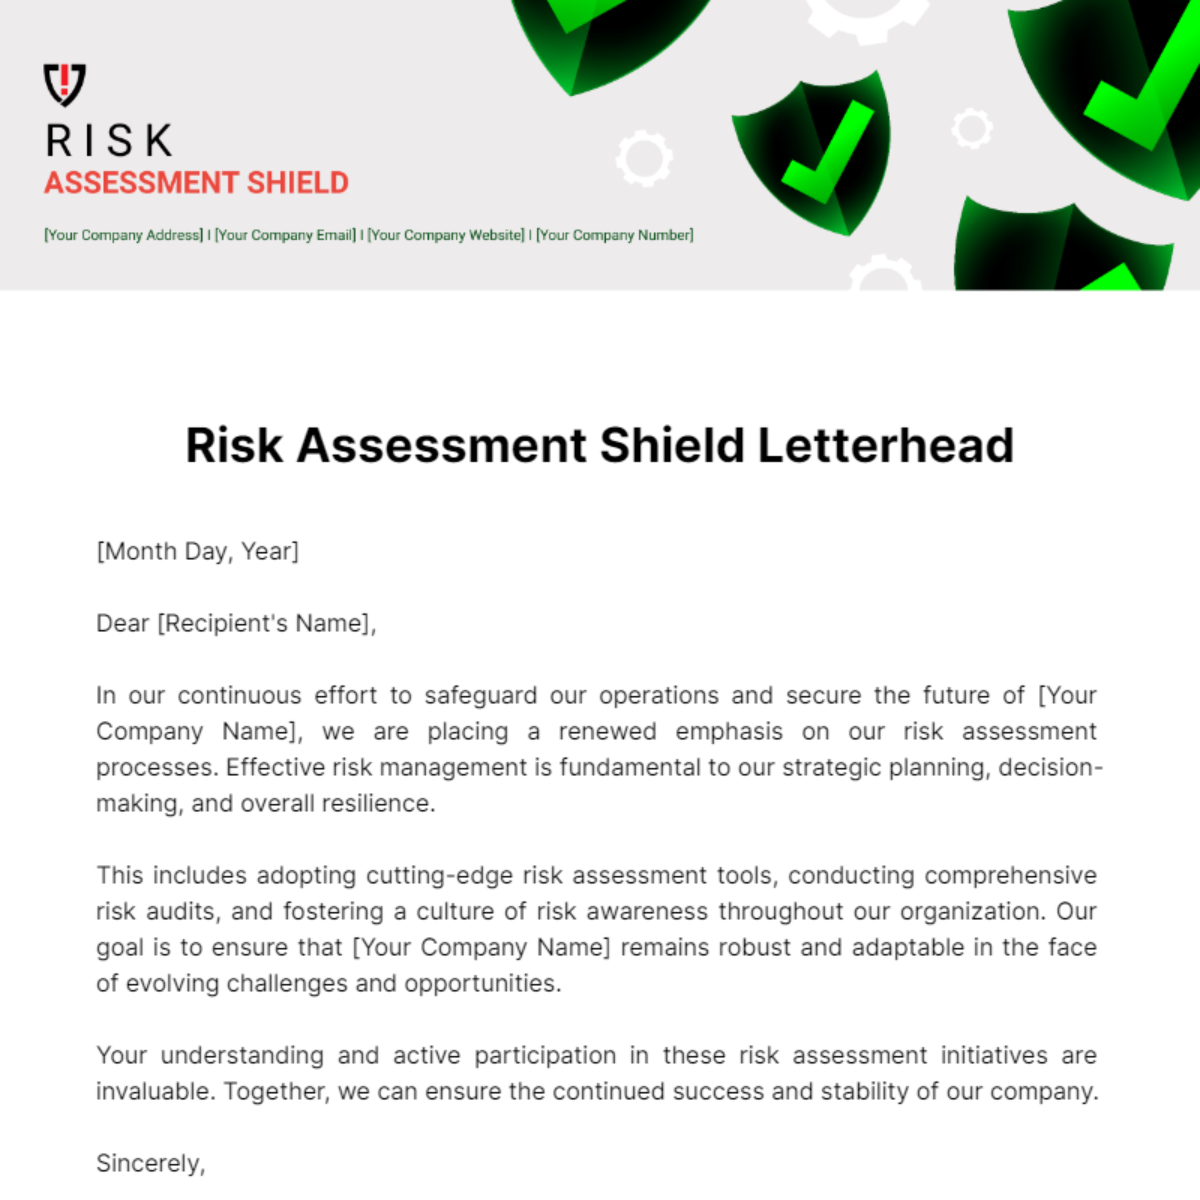 Risk Assessment Shield Letterhead Template